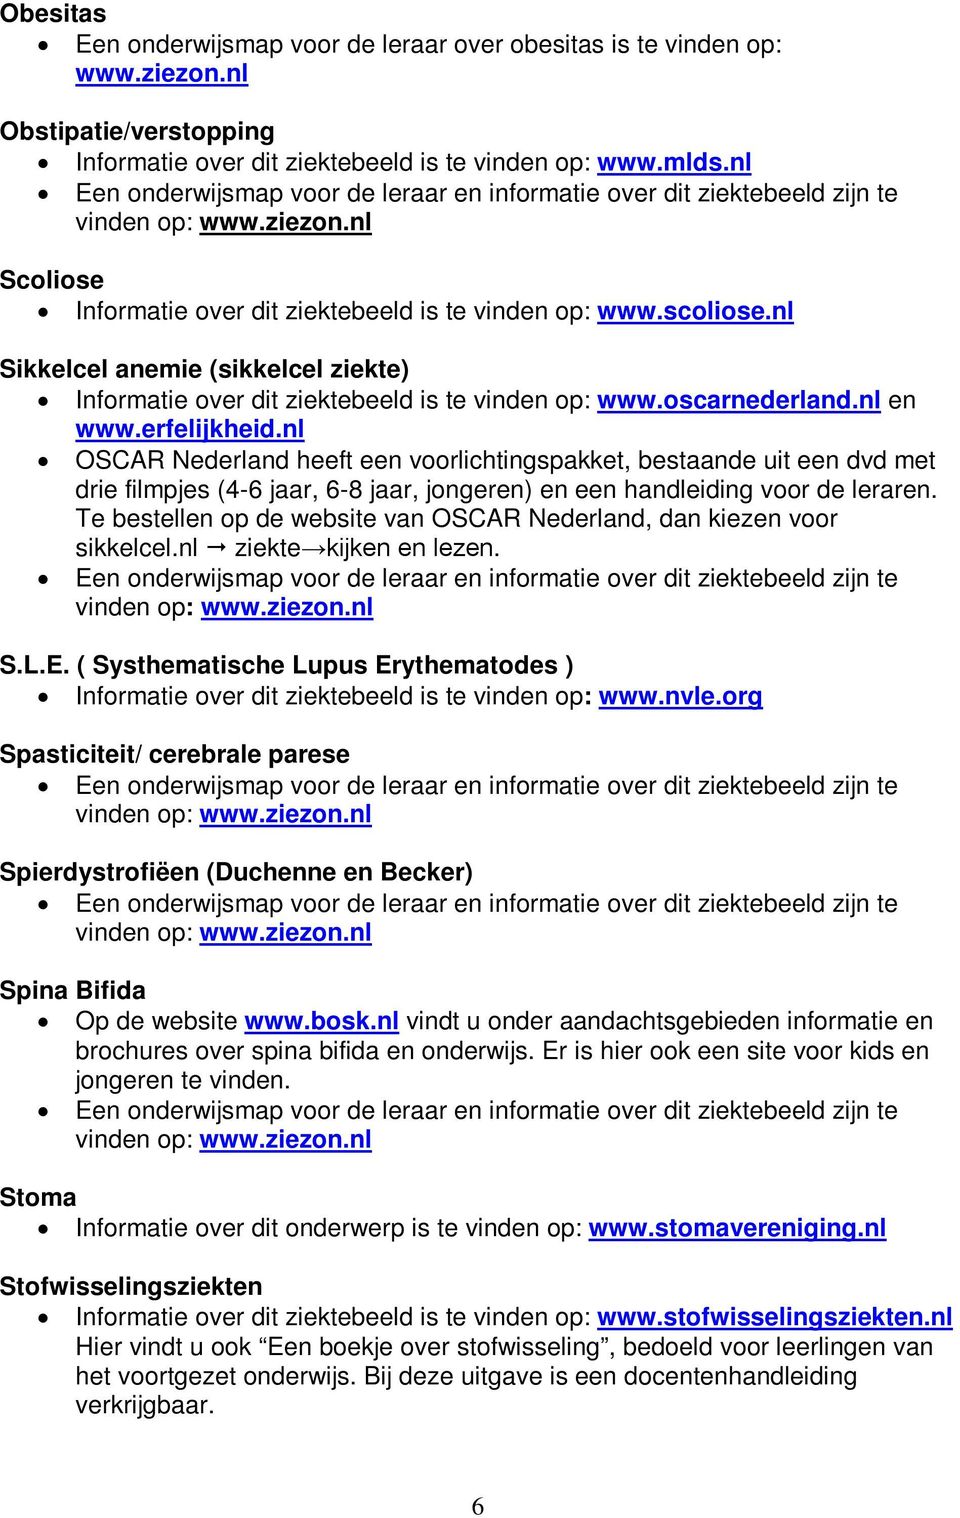 erfelijkheid.nl OSCAR Nederland heeft een voorlichtingspakket, bestaande uit een dvd met drie filmpjes (4-6 jaar, 6-8 jaar, jongeren) en een handleiding voor de leraren.